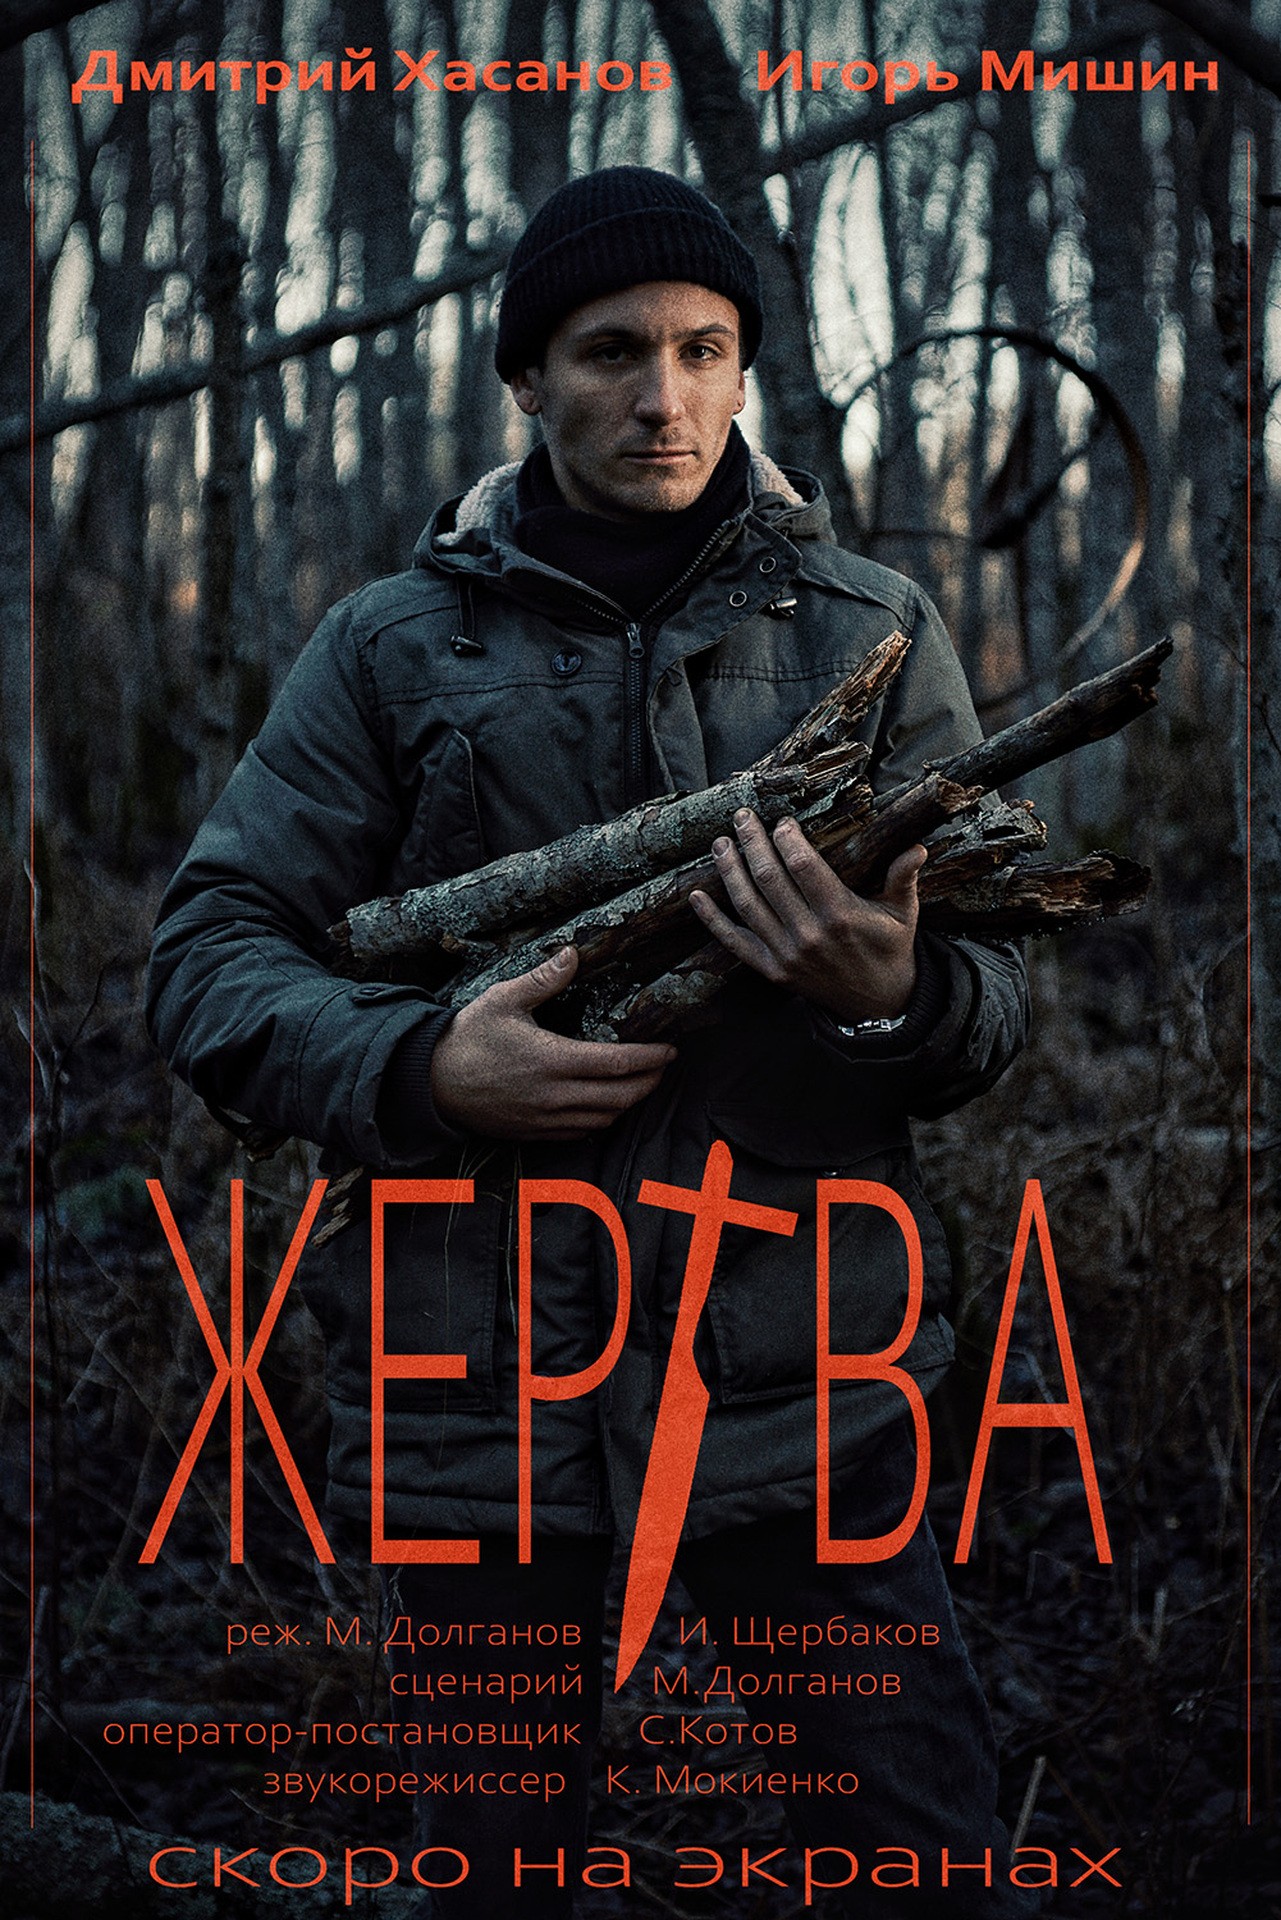 Промо постер №1 к к/ф "Жертва"